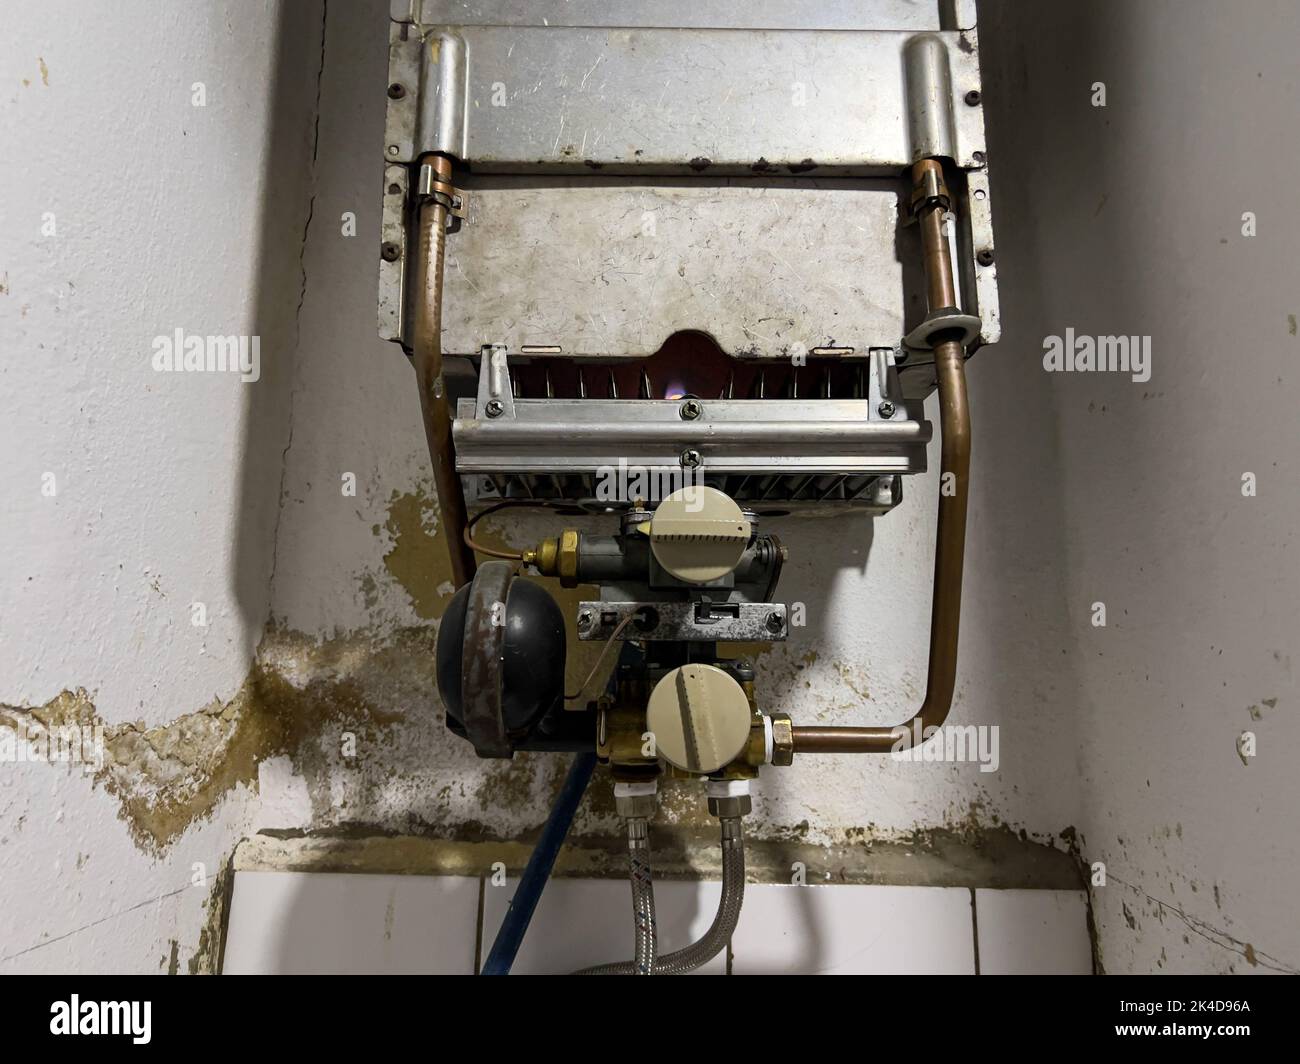 Vintage Gas Wasser Heizung mit Dusche auf der Backsteinmauer. Retro  Durchlauferhitzer mit Tippen Stockfotografie - Alamy